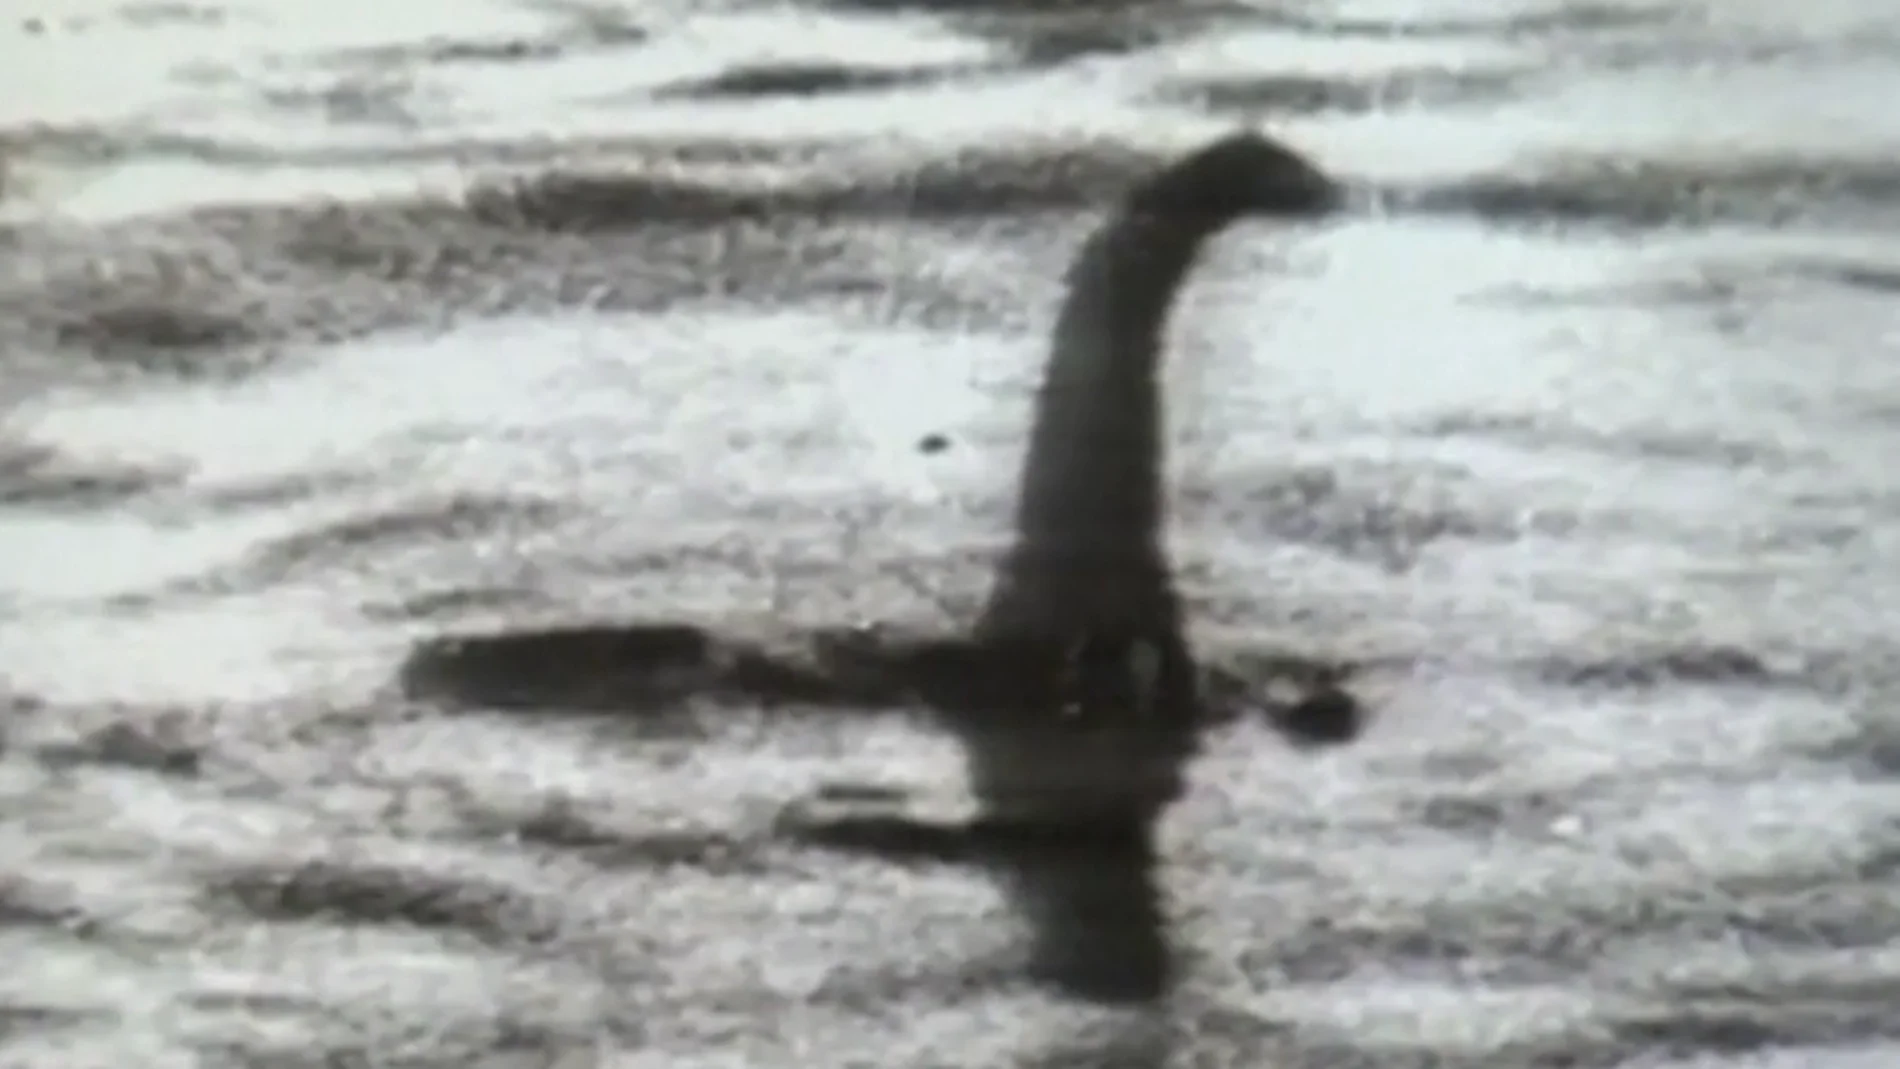 La verdad del monstruo del Lago Ness tras un año de investigación